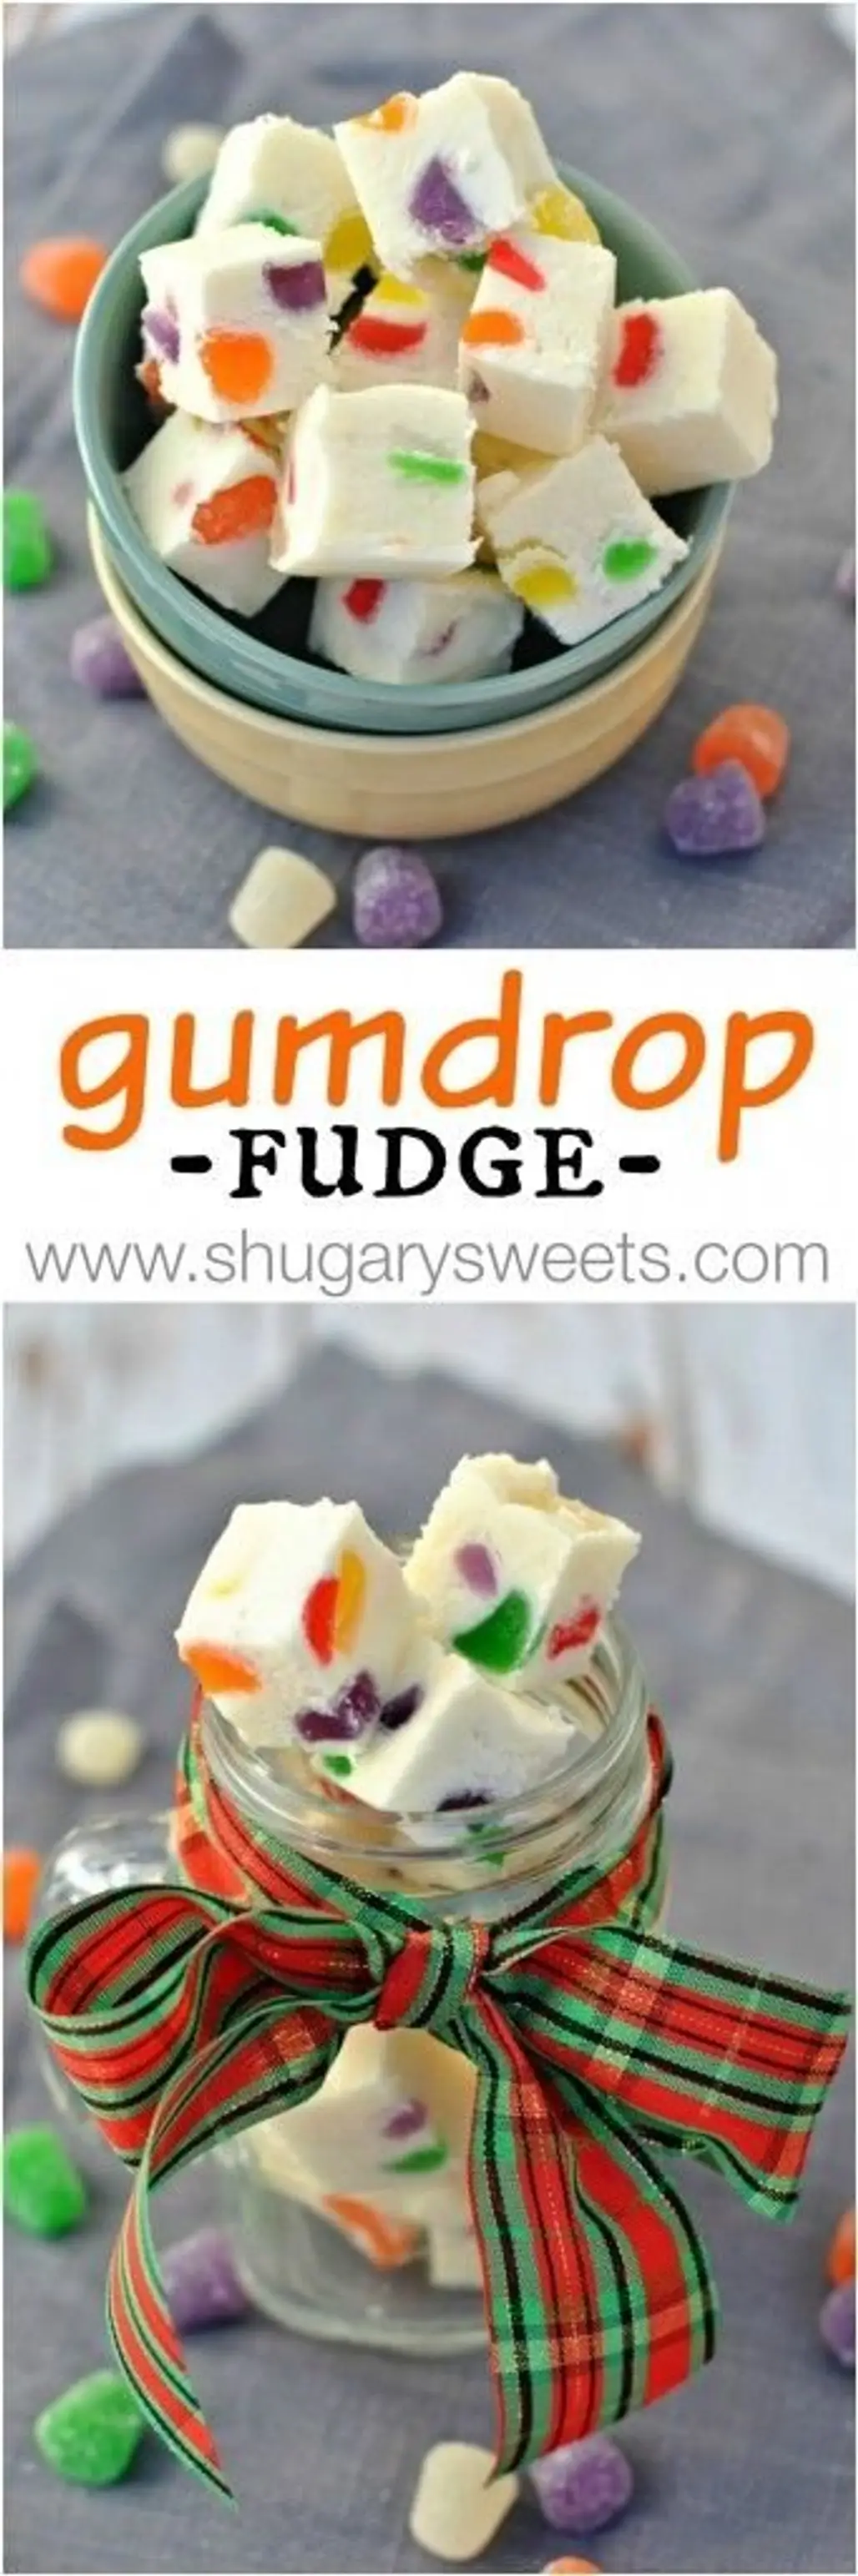 Gumdrop Fudge Recipe